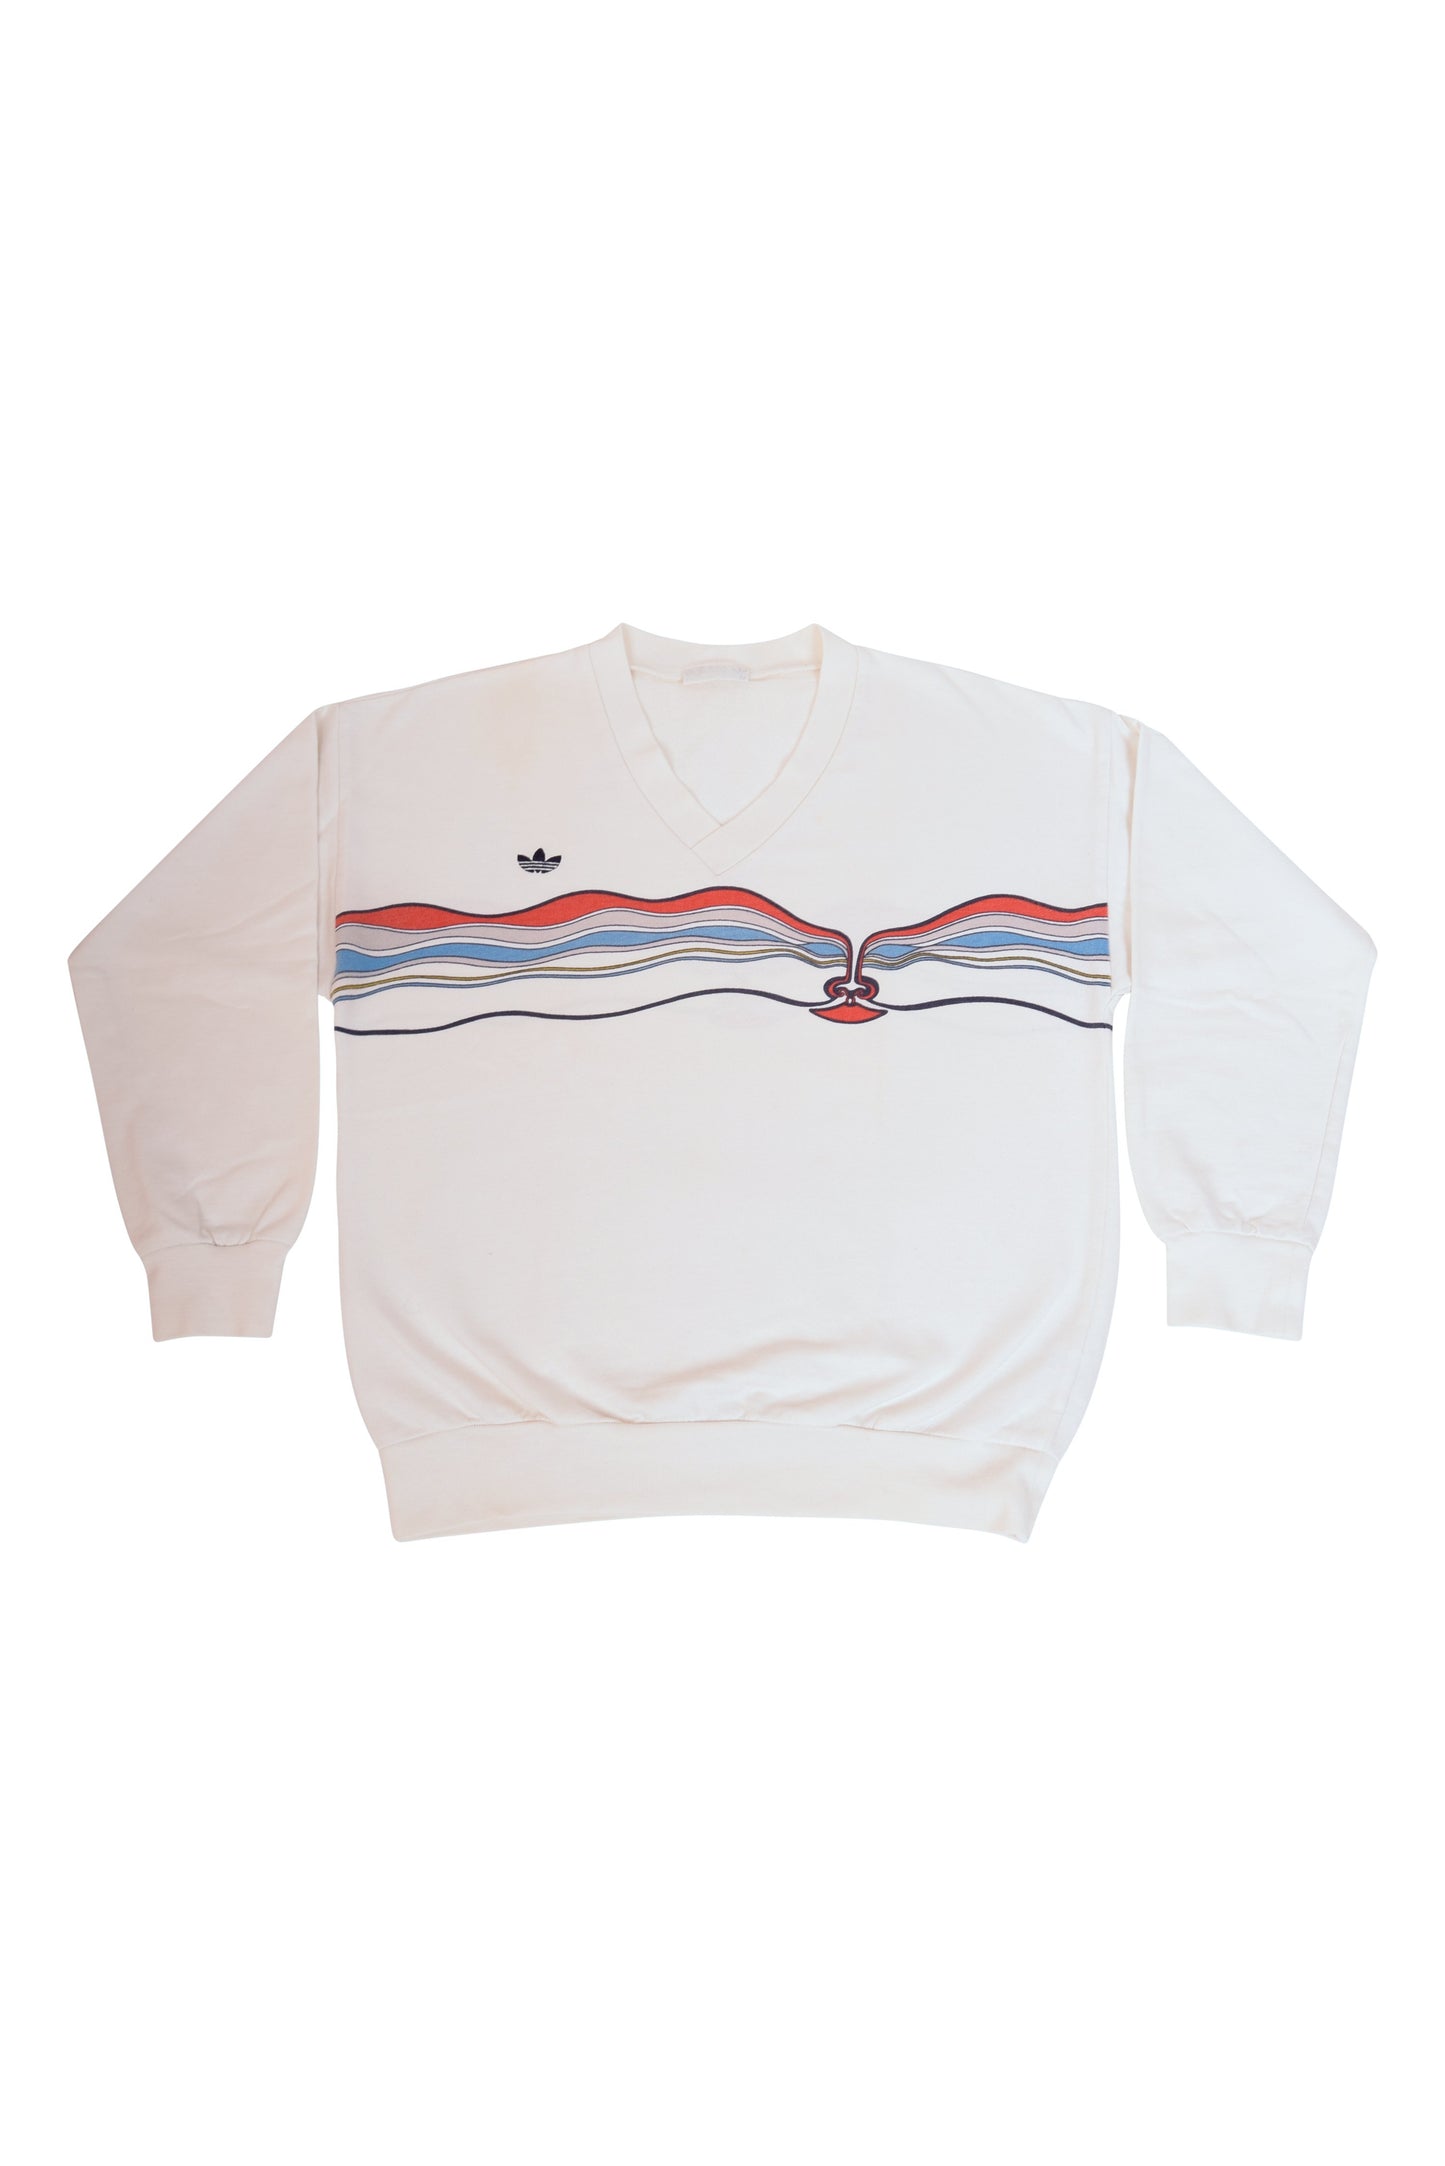 Vintage Adidas Ivan Lendl Tennis Sweatshirt Made in West Germany